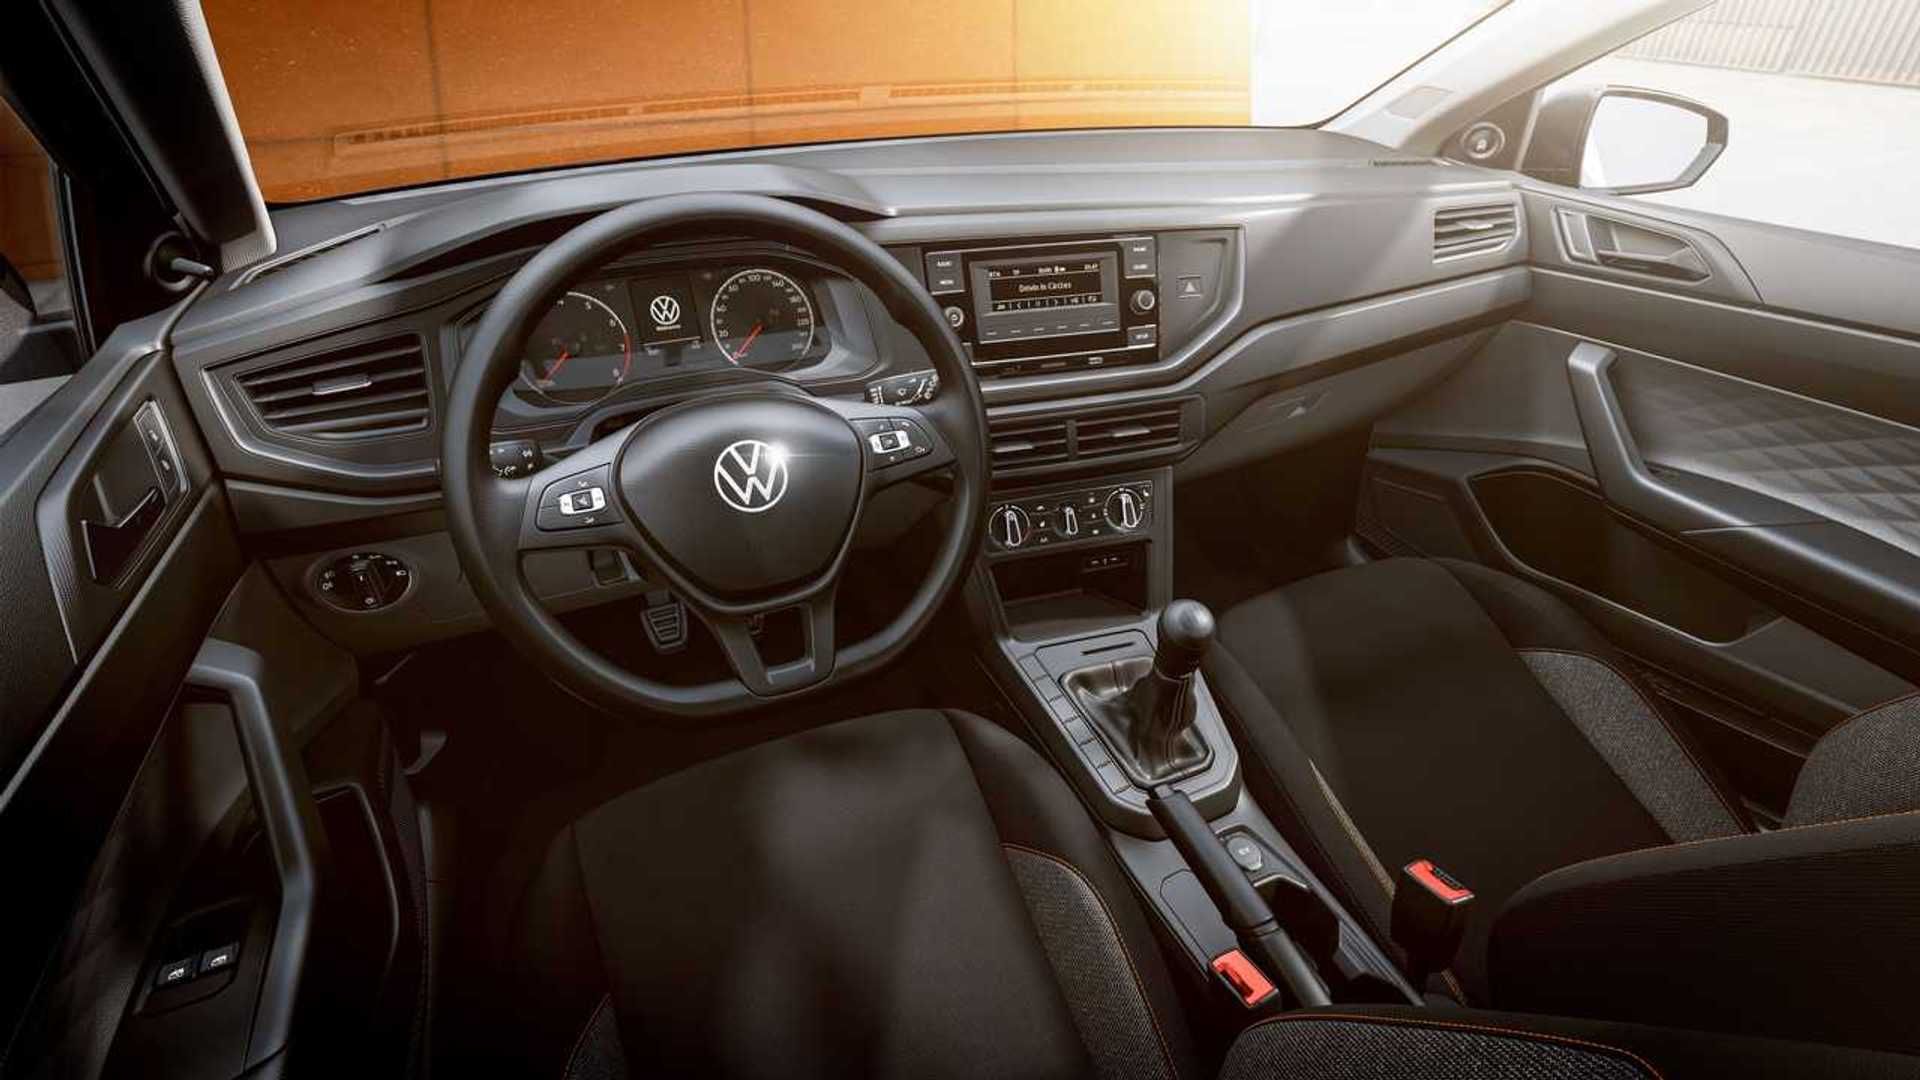 ¿Cuál es el precio del Volkswagen más económico del mercado? | Parabrisas